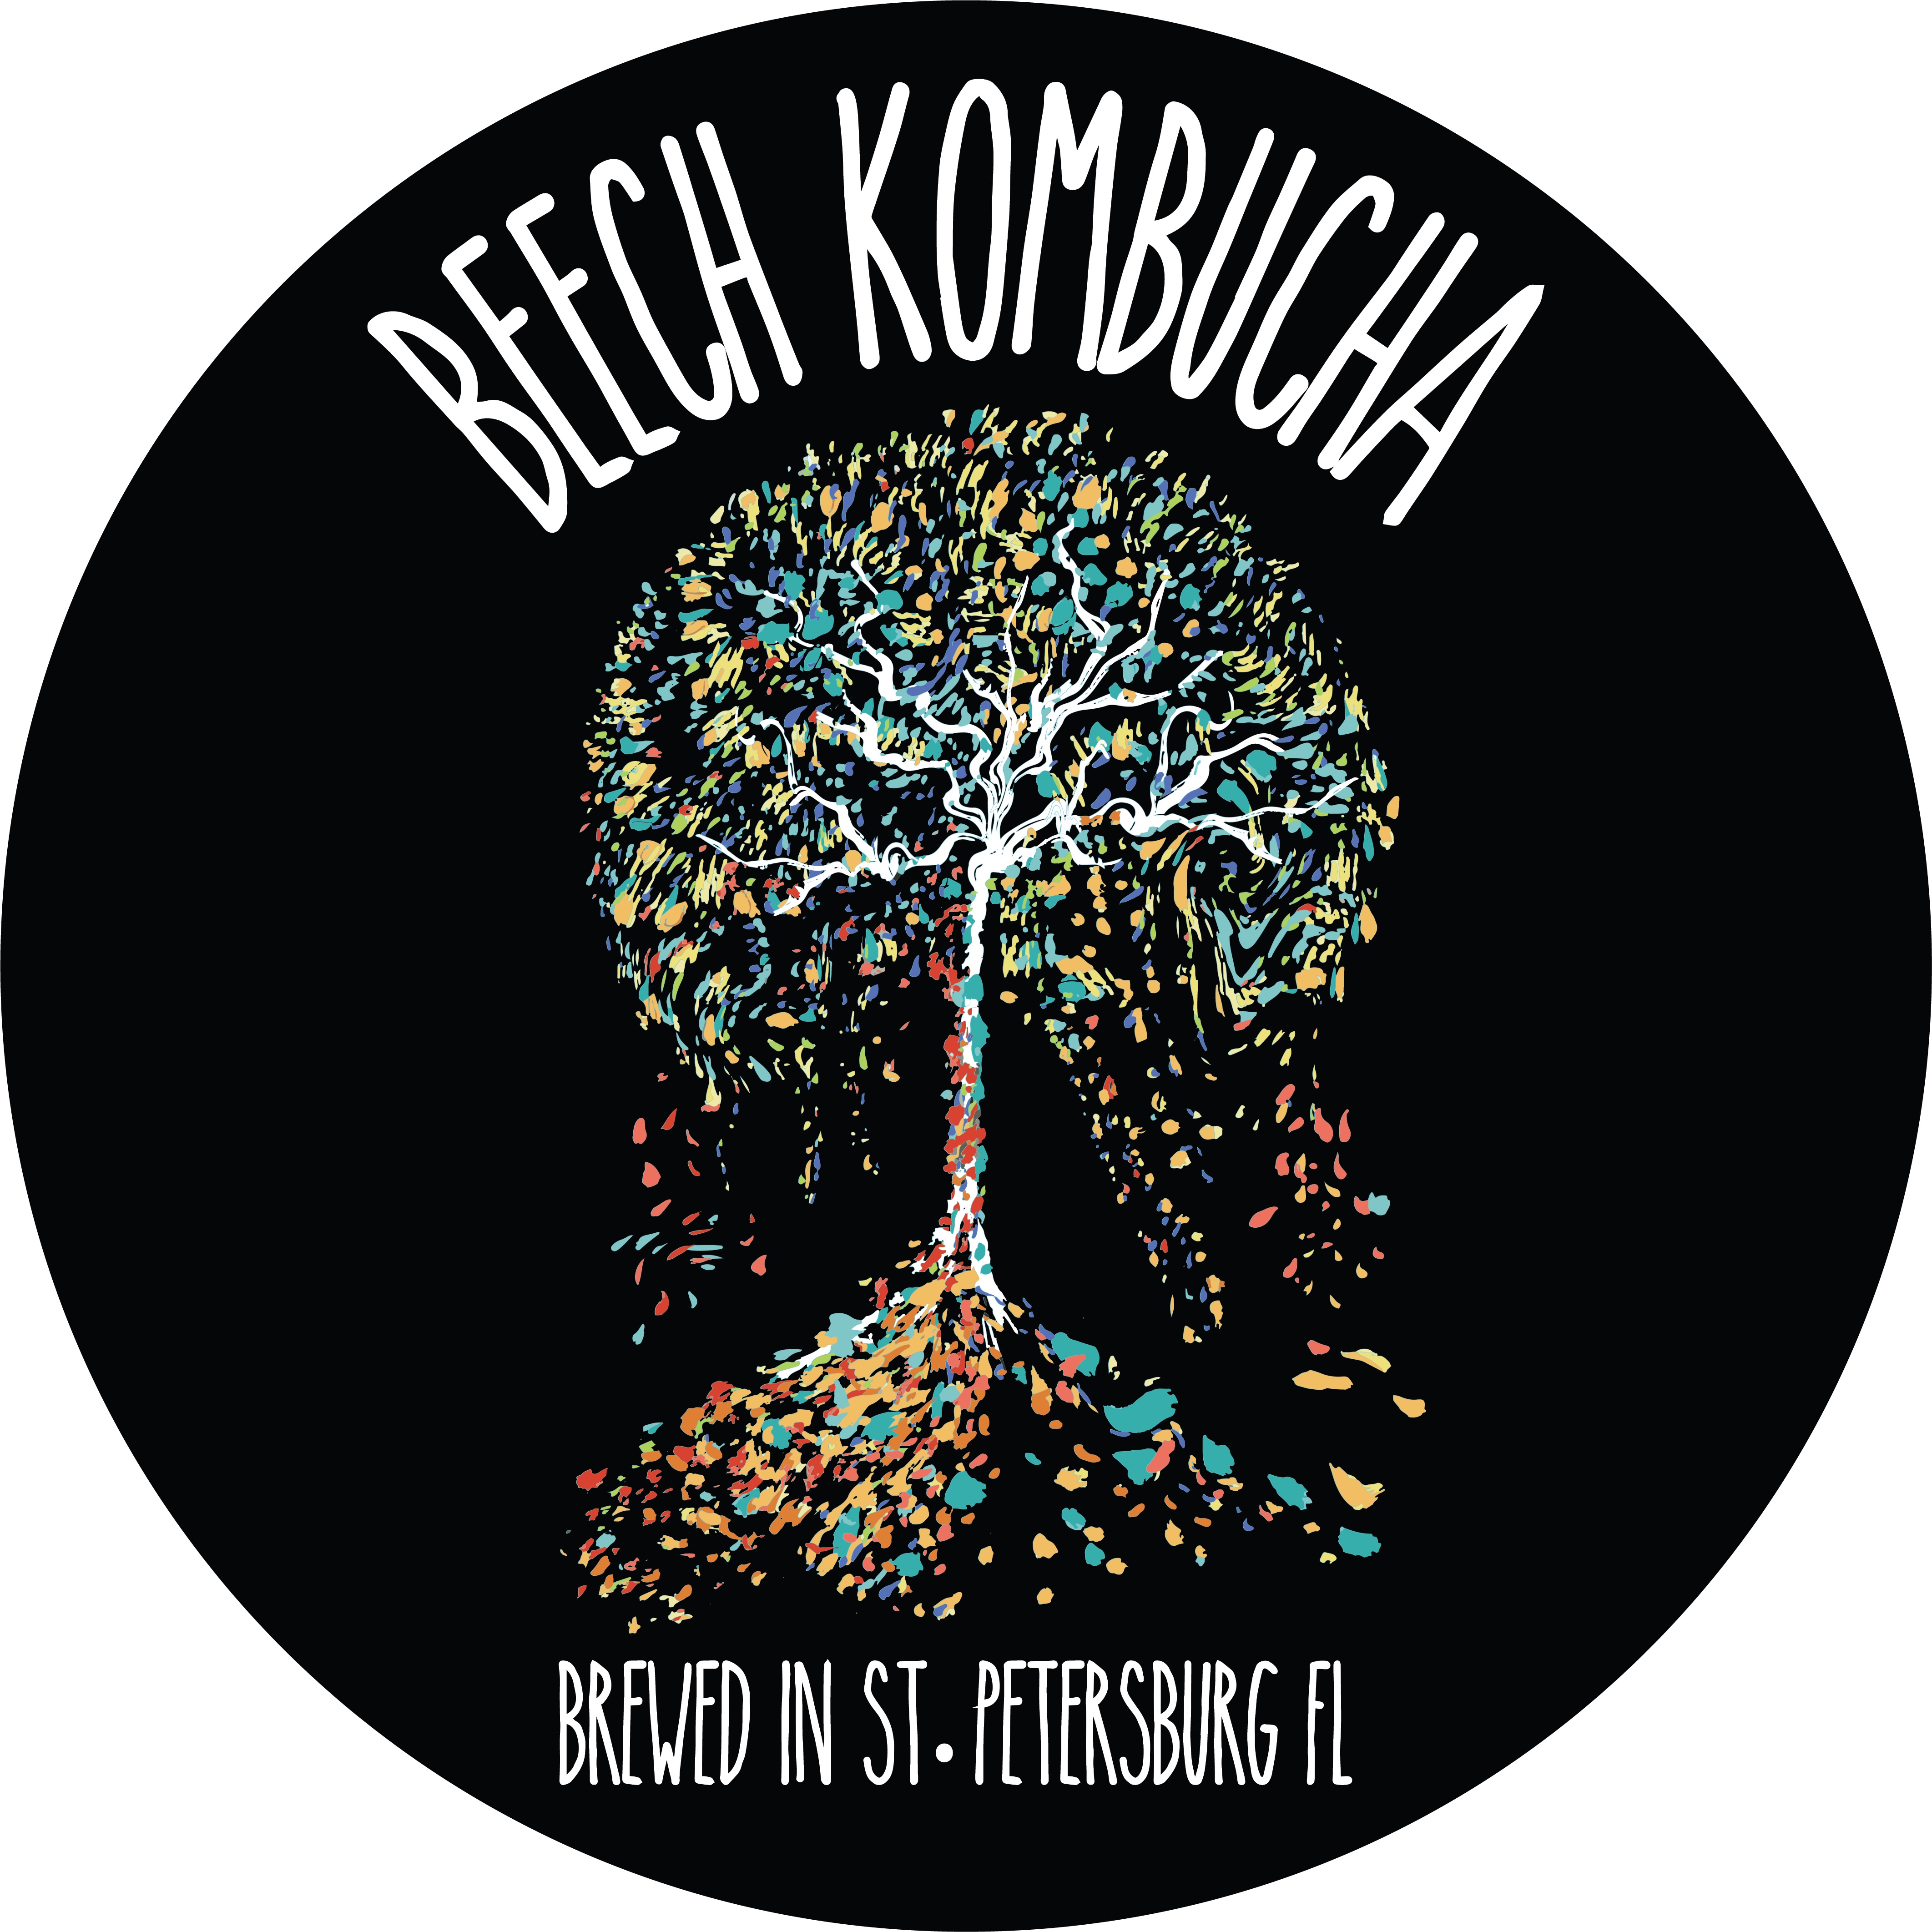 Beech Kombucha